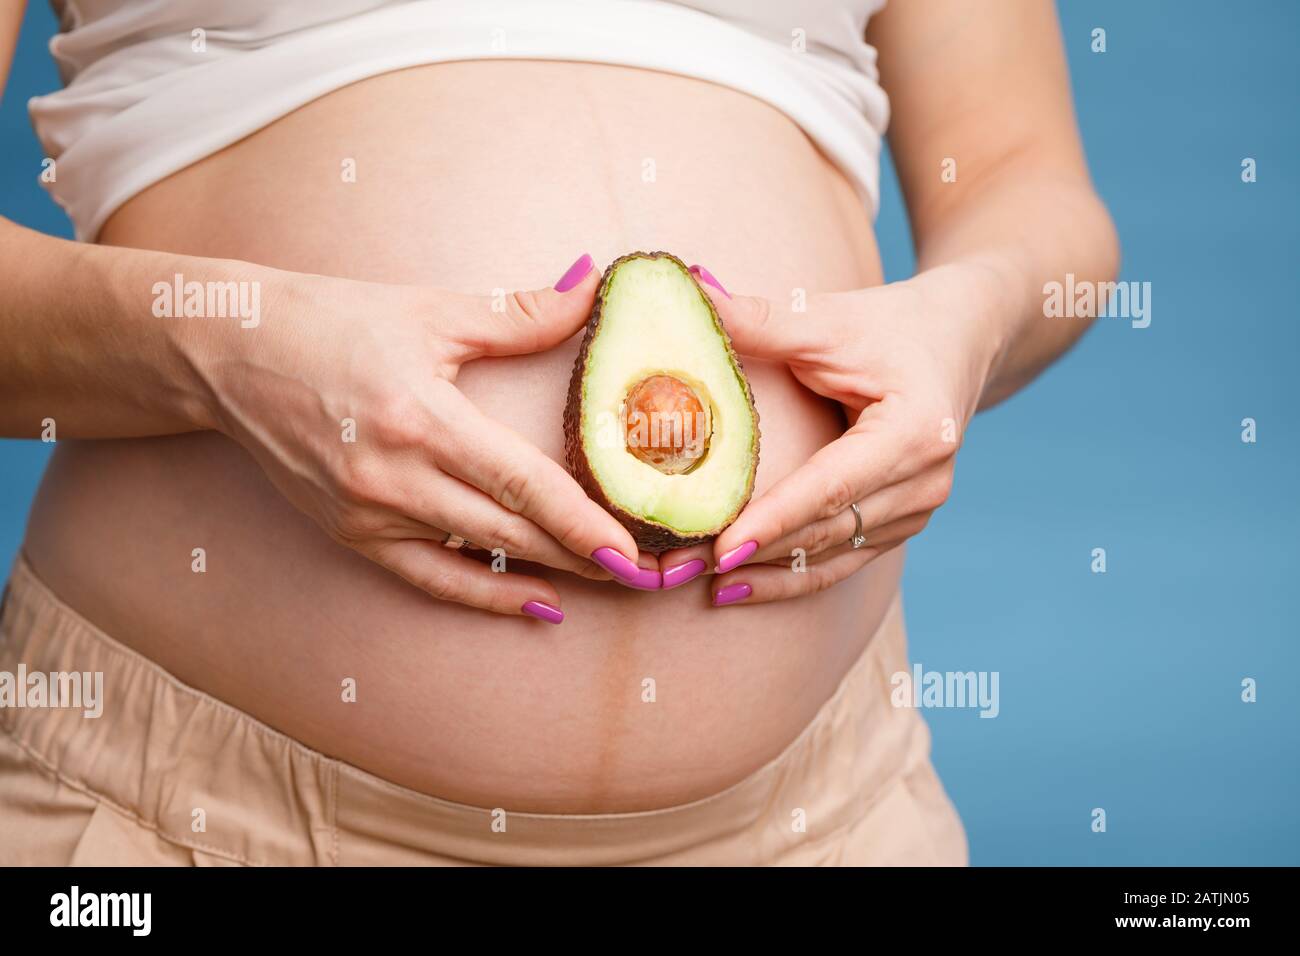 Studio geschossen von jungen schwangeren Frau mit eine Hälfte eines frischen avocado Obst in der Nähe von ihrem Bauch vor blauem Hintergrund - gesunde Ernährung und pregn Stockfoto